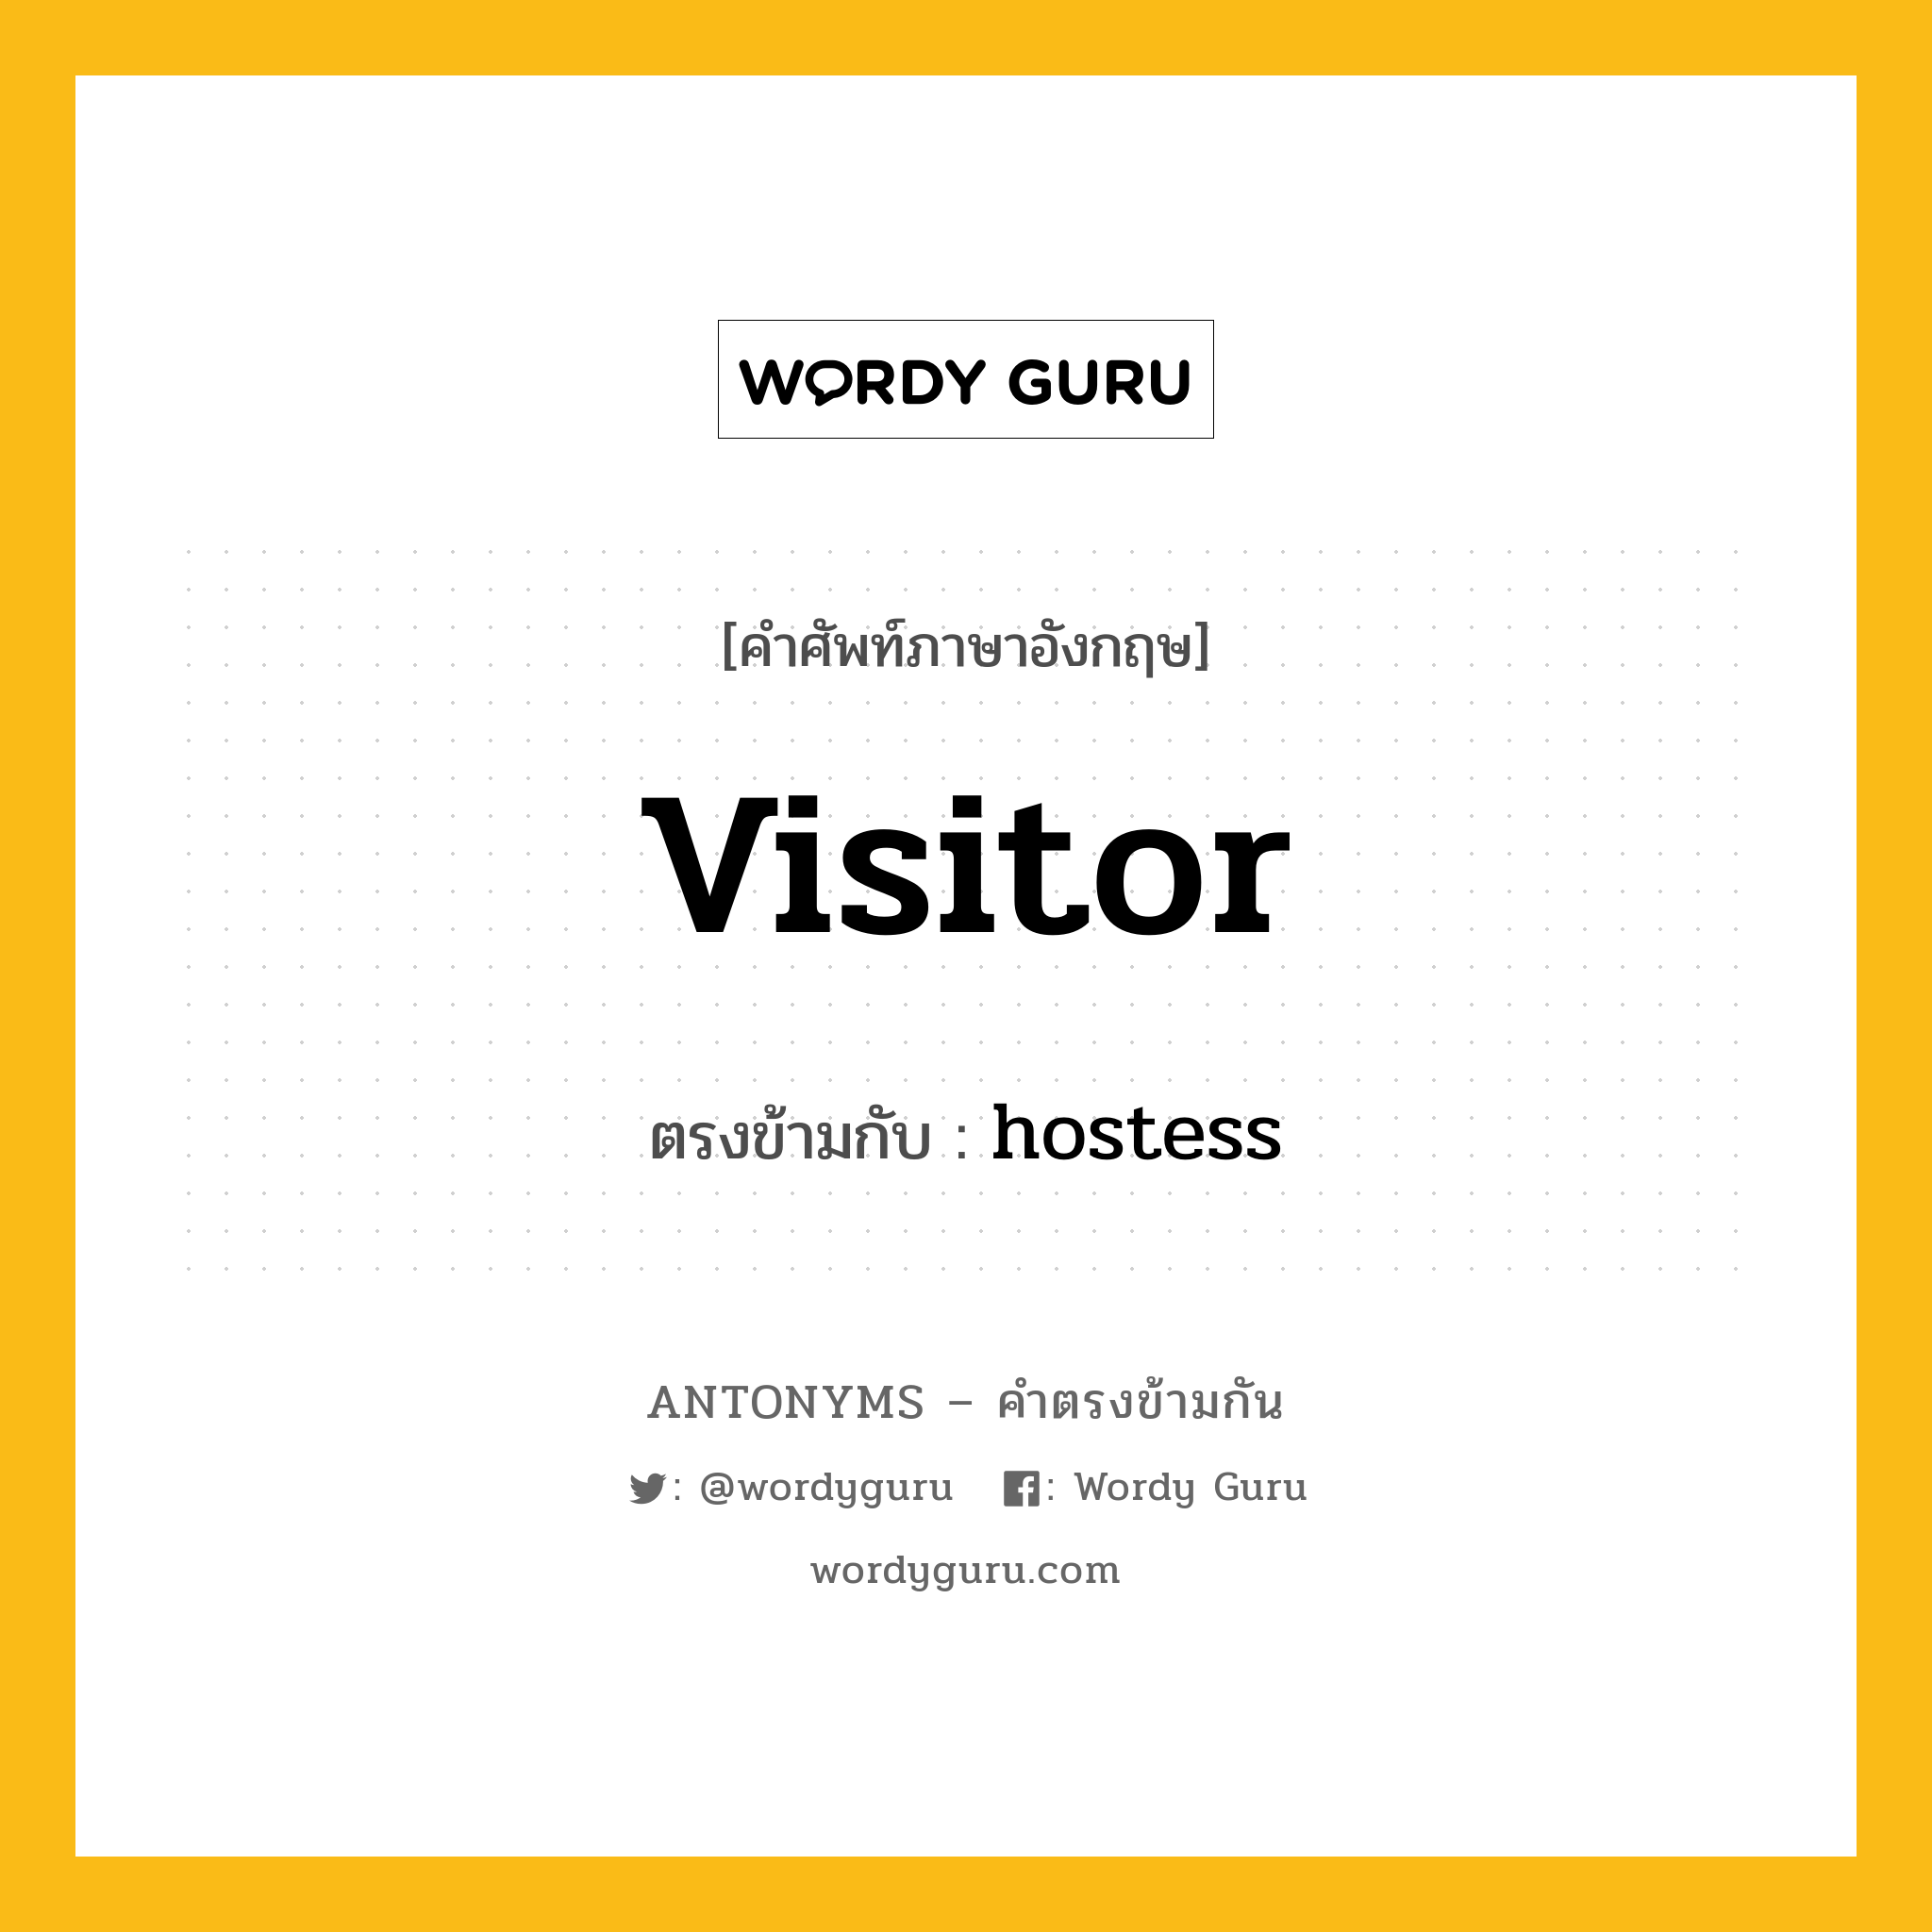 visitor เป็นคำตรงข้ามกับคำไหนบ้าง?, คำศัพท์ภาษาอังกฤษ visitor ตรงข้ามกับ hostess หมวด hostess